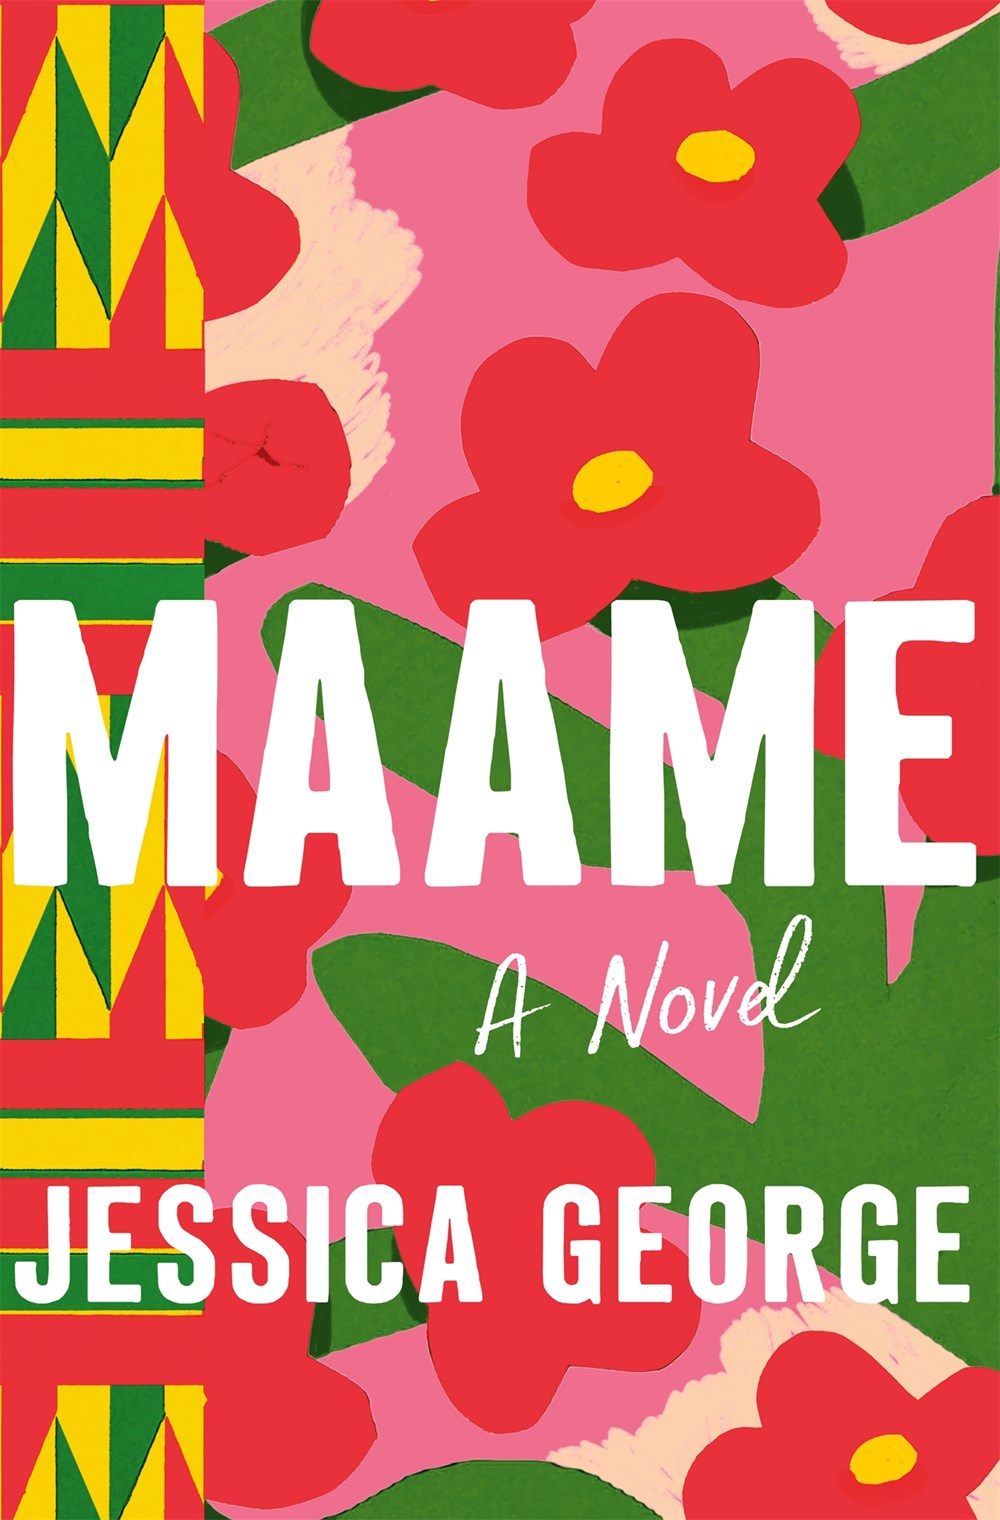 Maame: A Novel